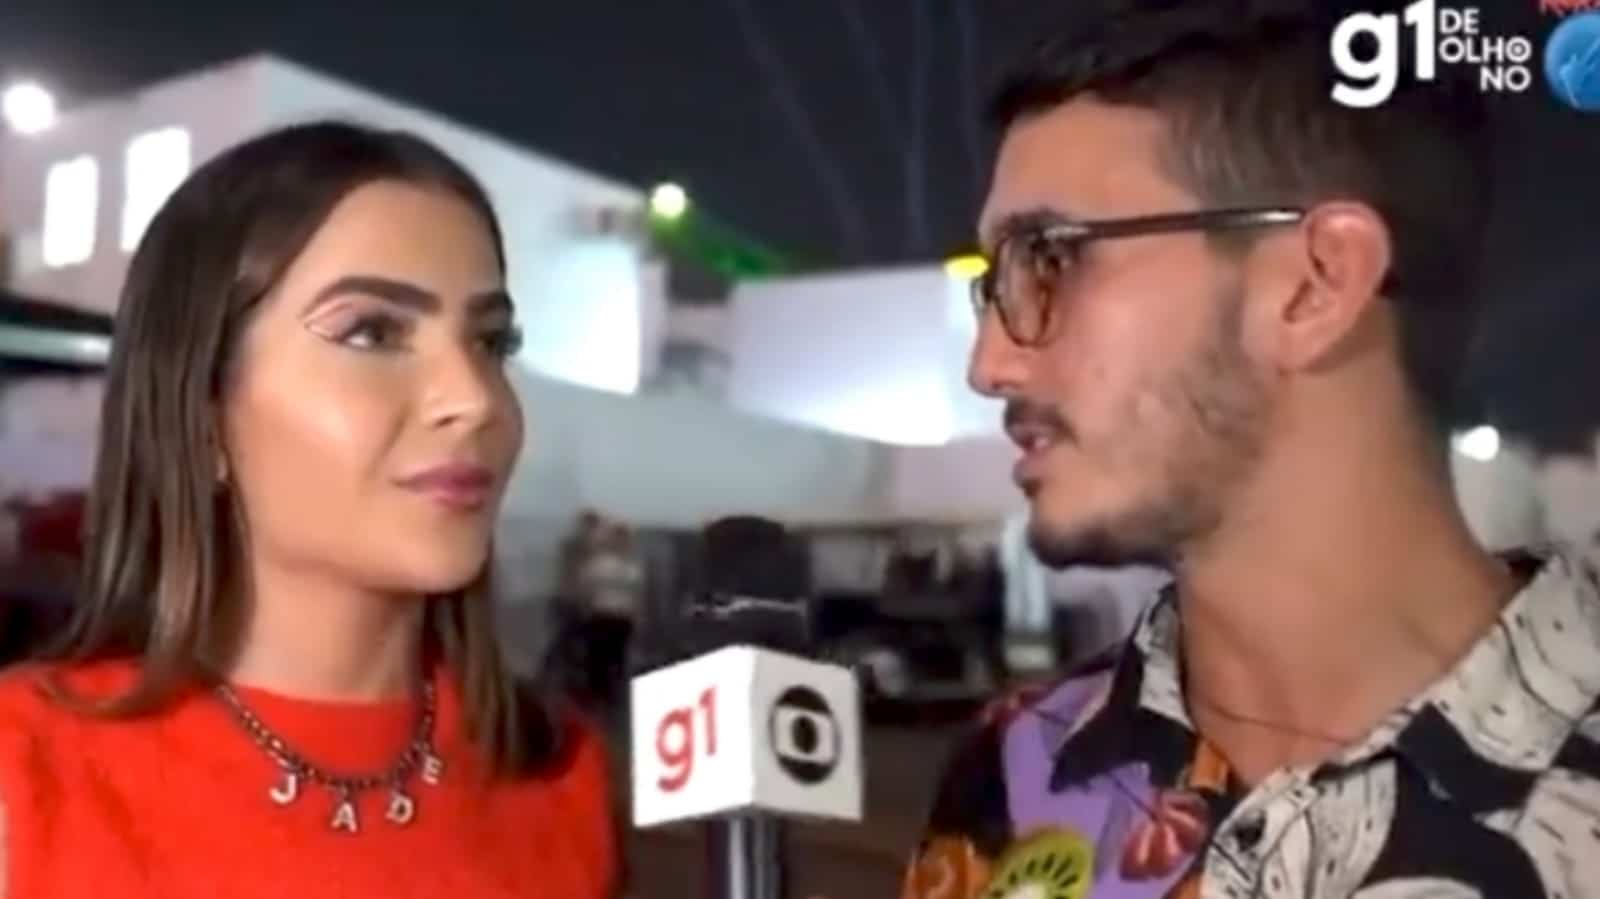 Jade Picon ignora repórter ao ser perguntada sobre affair com cantor